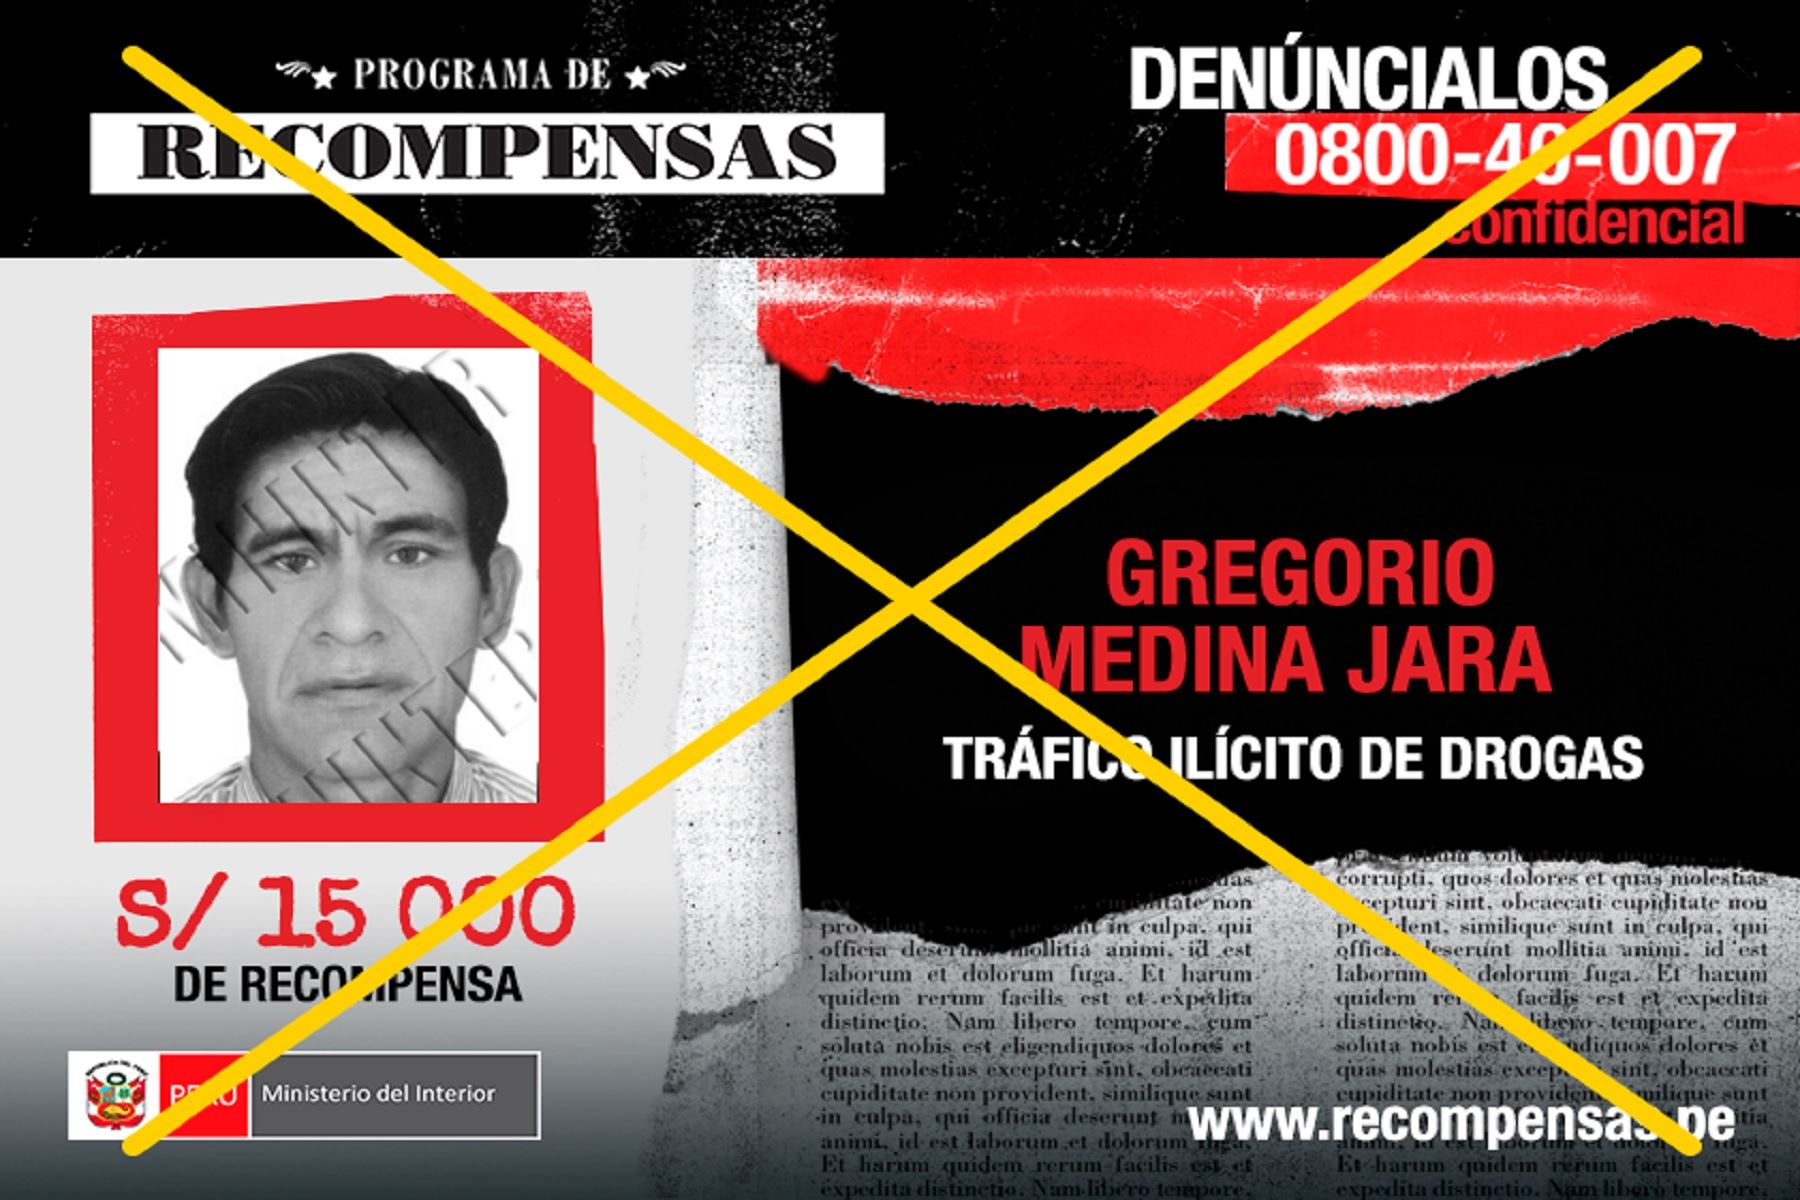 el Estado ofrecía S/15,000 de recompensa por Gregorio Medina Jara.